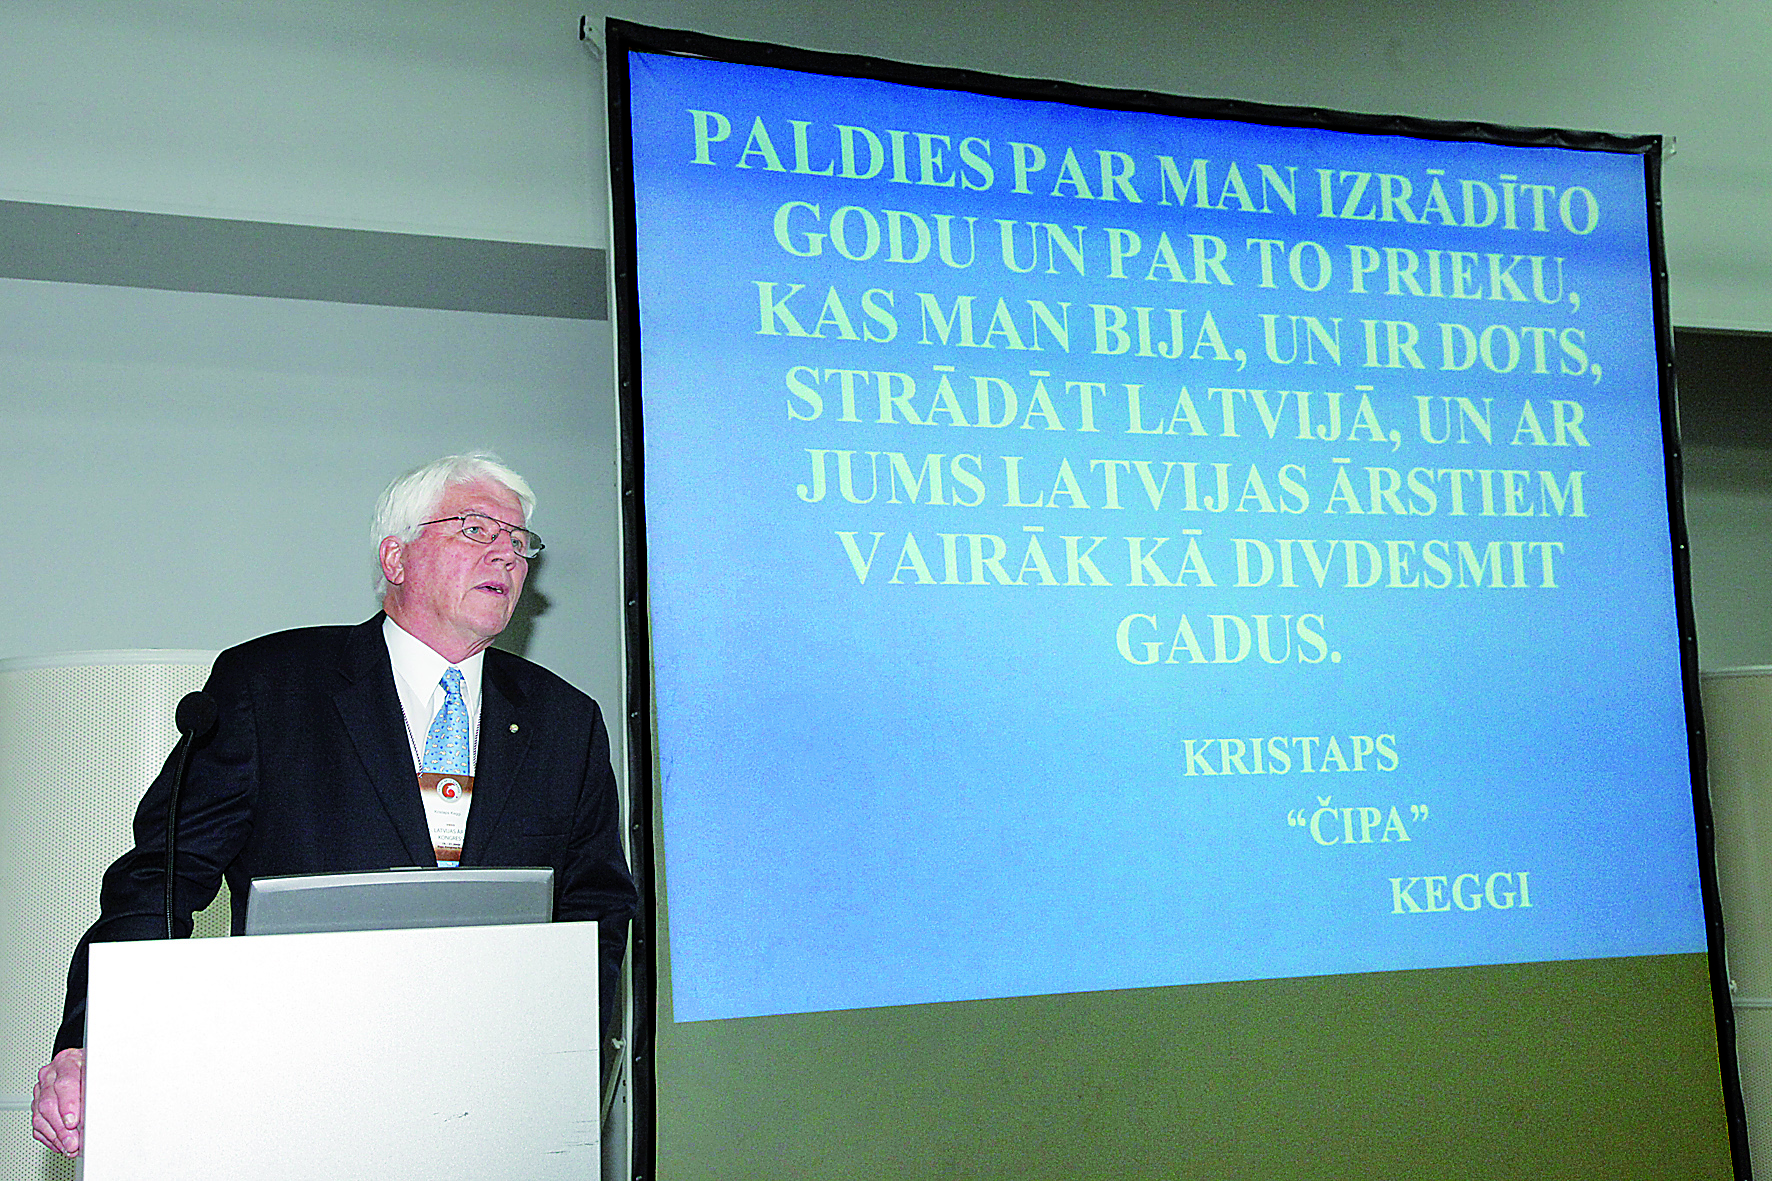 Kristaps Juris Keggi (1934-2023) Latvijas Ārstu kongresā, 2009Kristaps Juris Keggi Latvijas Ārstu kongresā, 2009